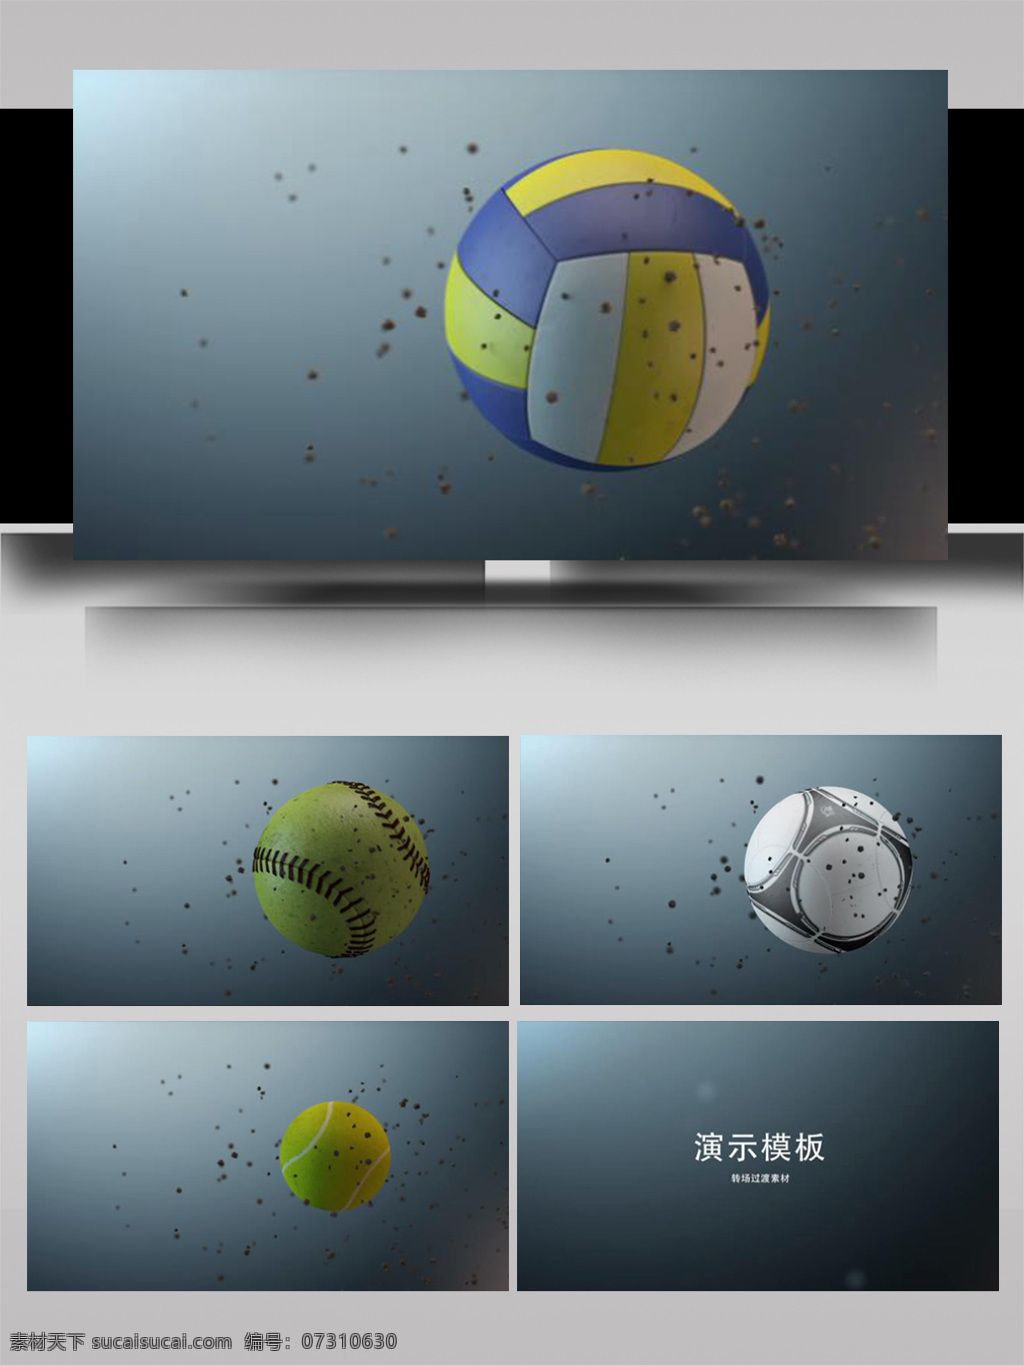 运动 球类 动感 展示 ae 模板 立体 彩色 大气 3d标志 简洁 旋转 散开 组合 光影 动态 动画 片头 转场 过度